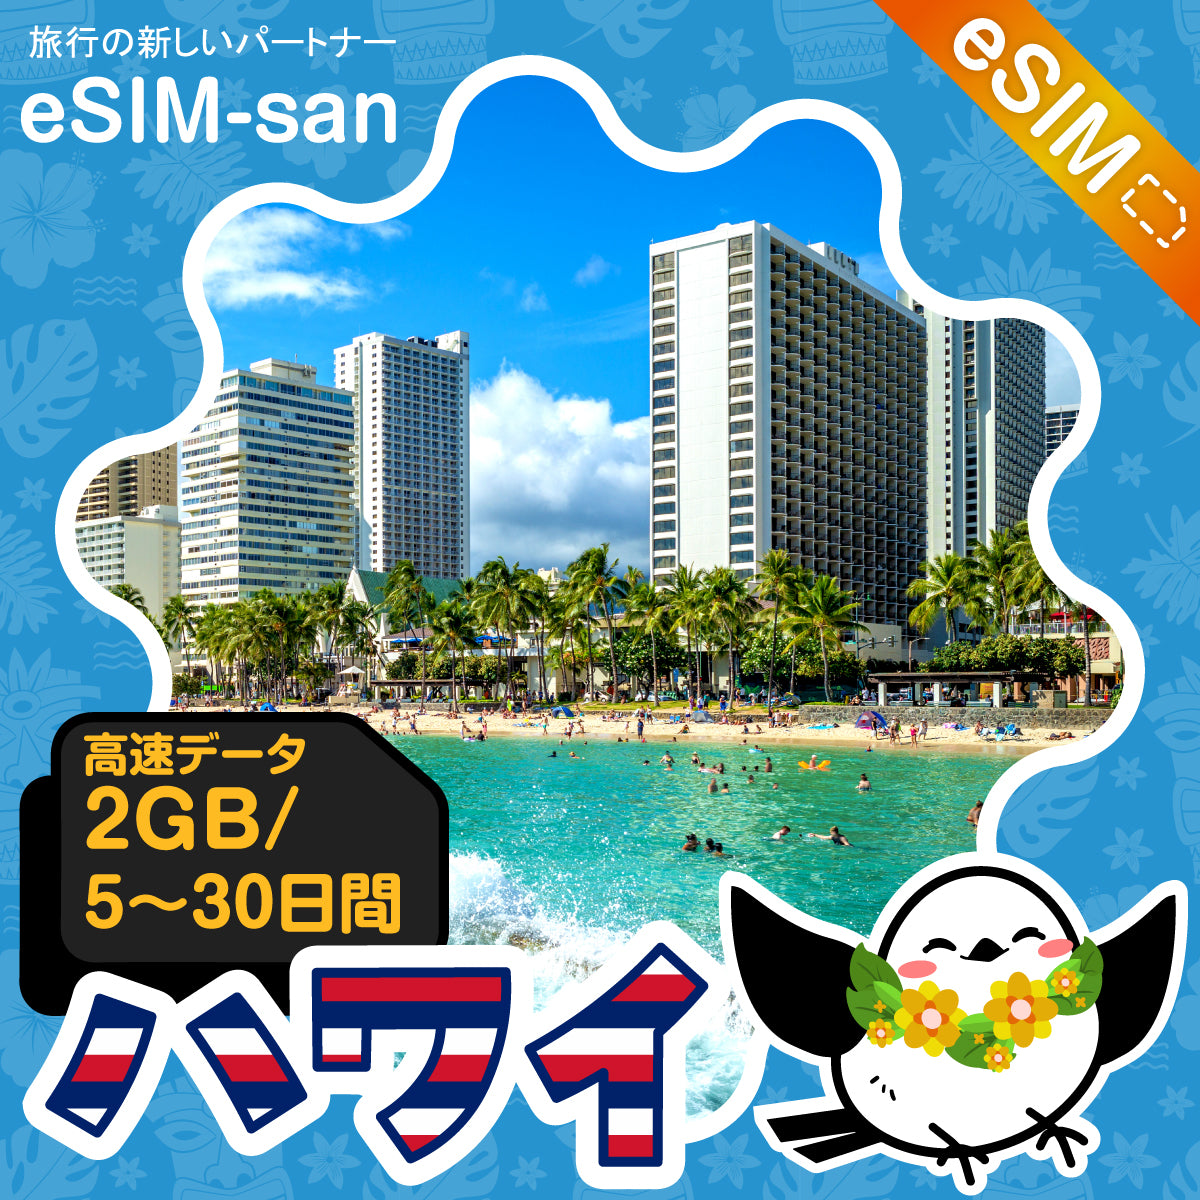 ハワイeSIMの2GB/dayプラン画像_eSIM-san